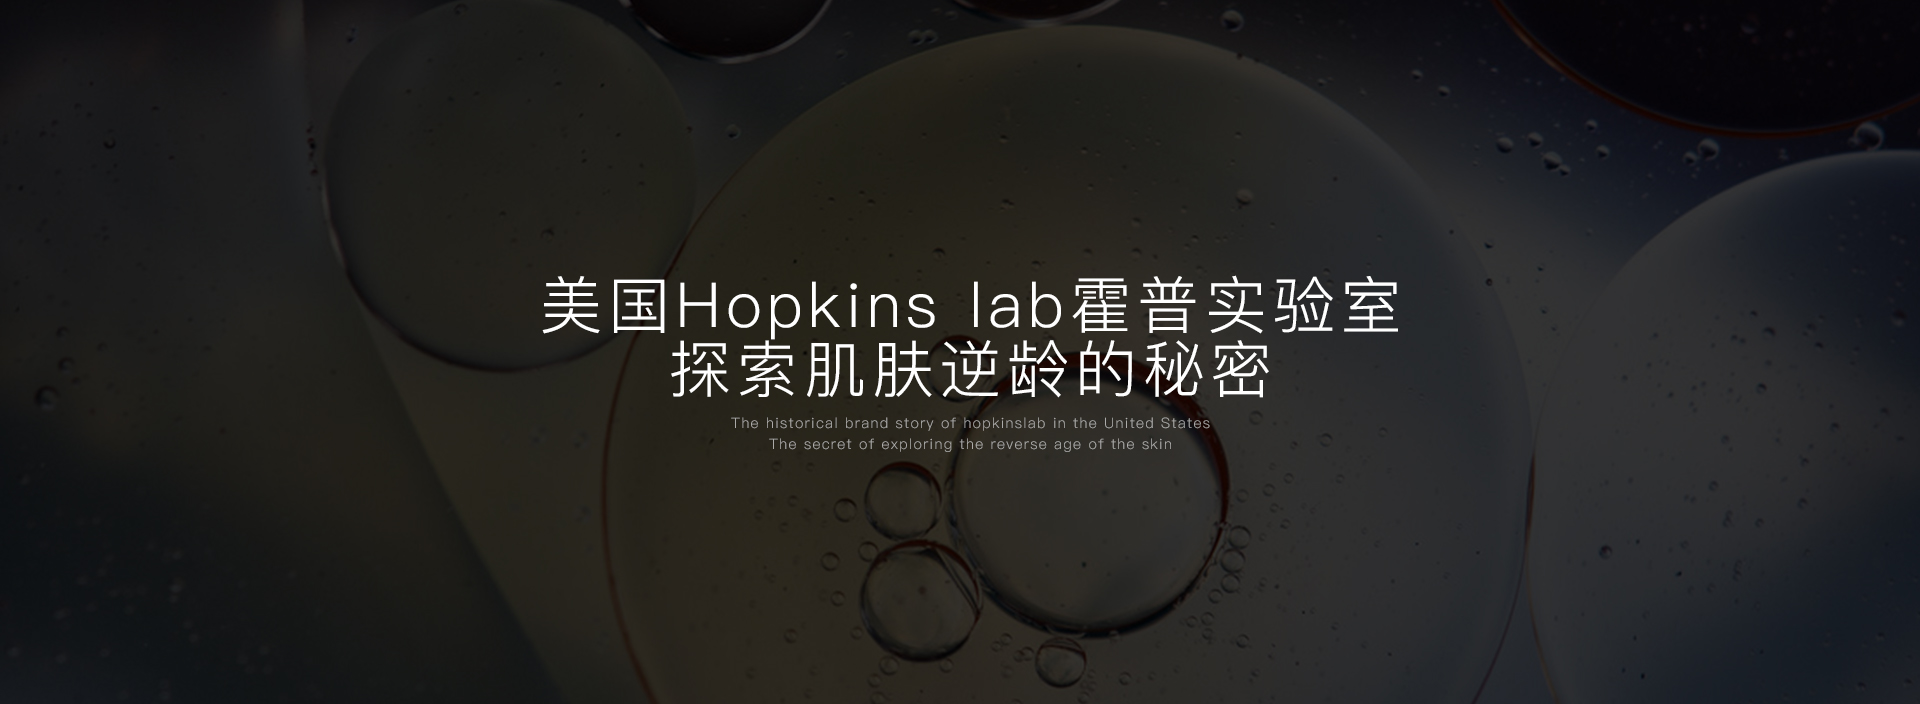 霍普金斯实验室(Hopkins lab)中国官方网站,Hopkins lab去眼袋眼霜生物医学界科技工程的颠覆之作.